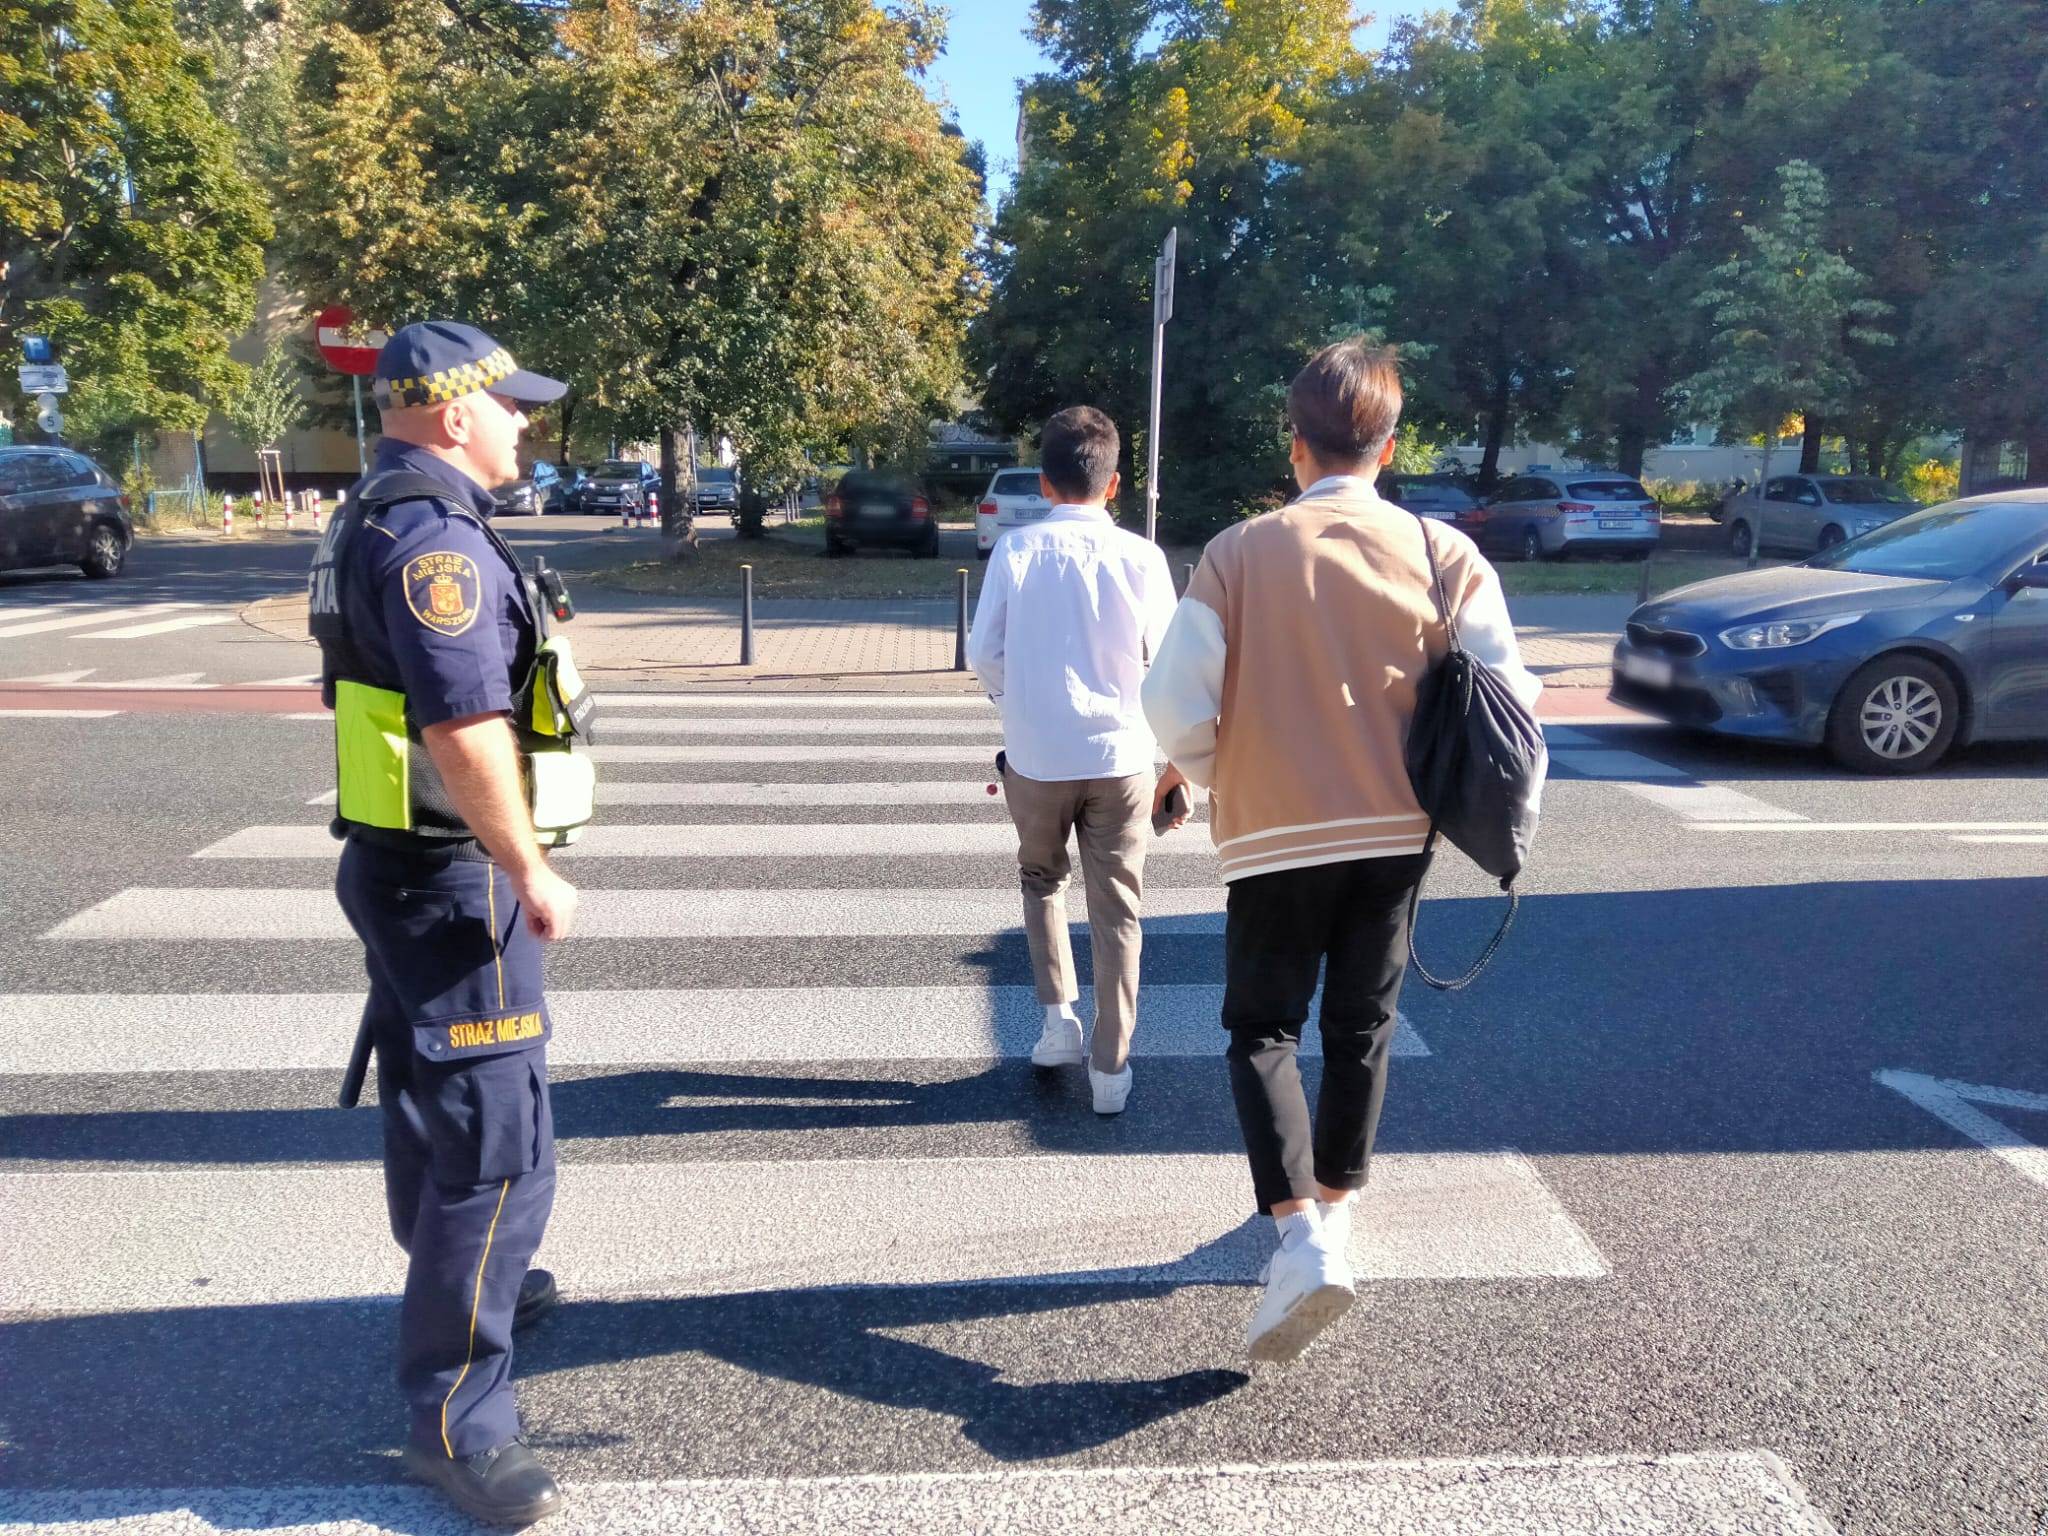 Strażnik miejski na przejściu dla pieszych zabezpiecza spokojne przekroczenie jezdni przez dwóch młodzieńców